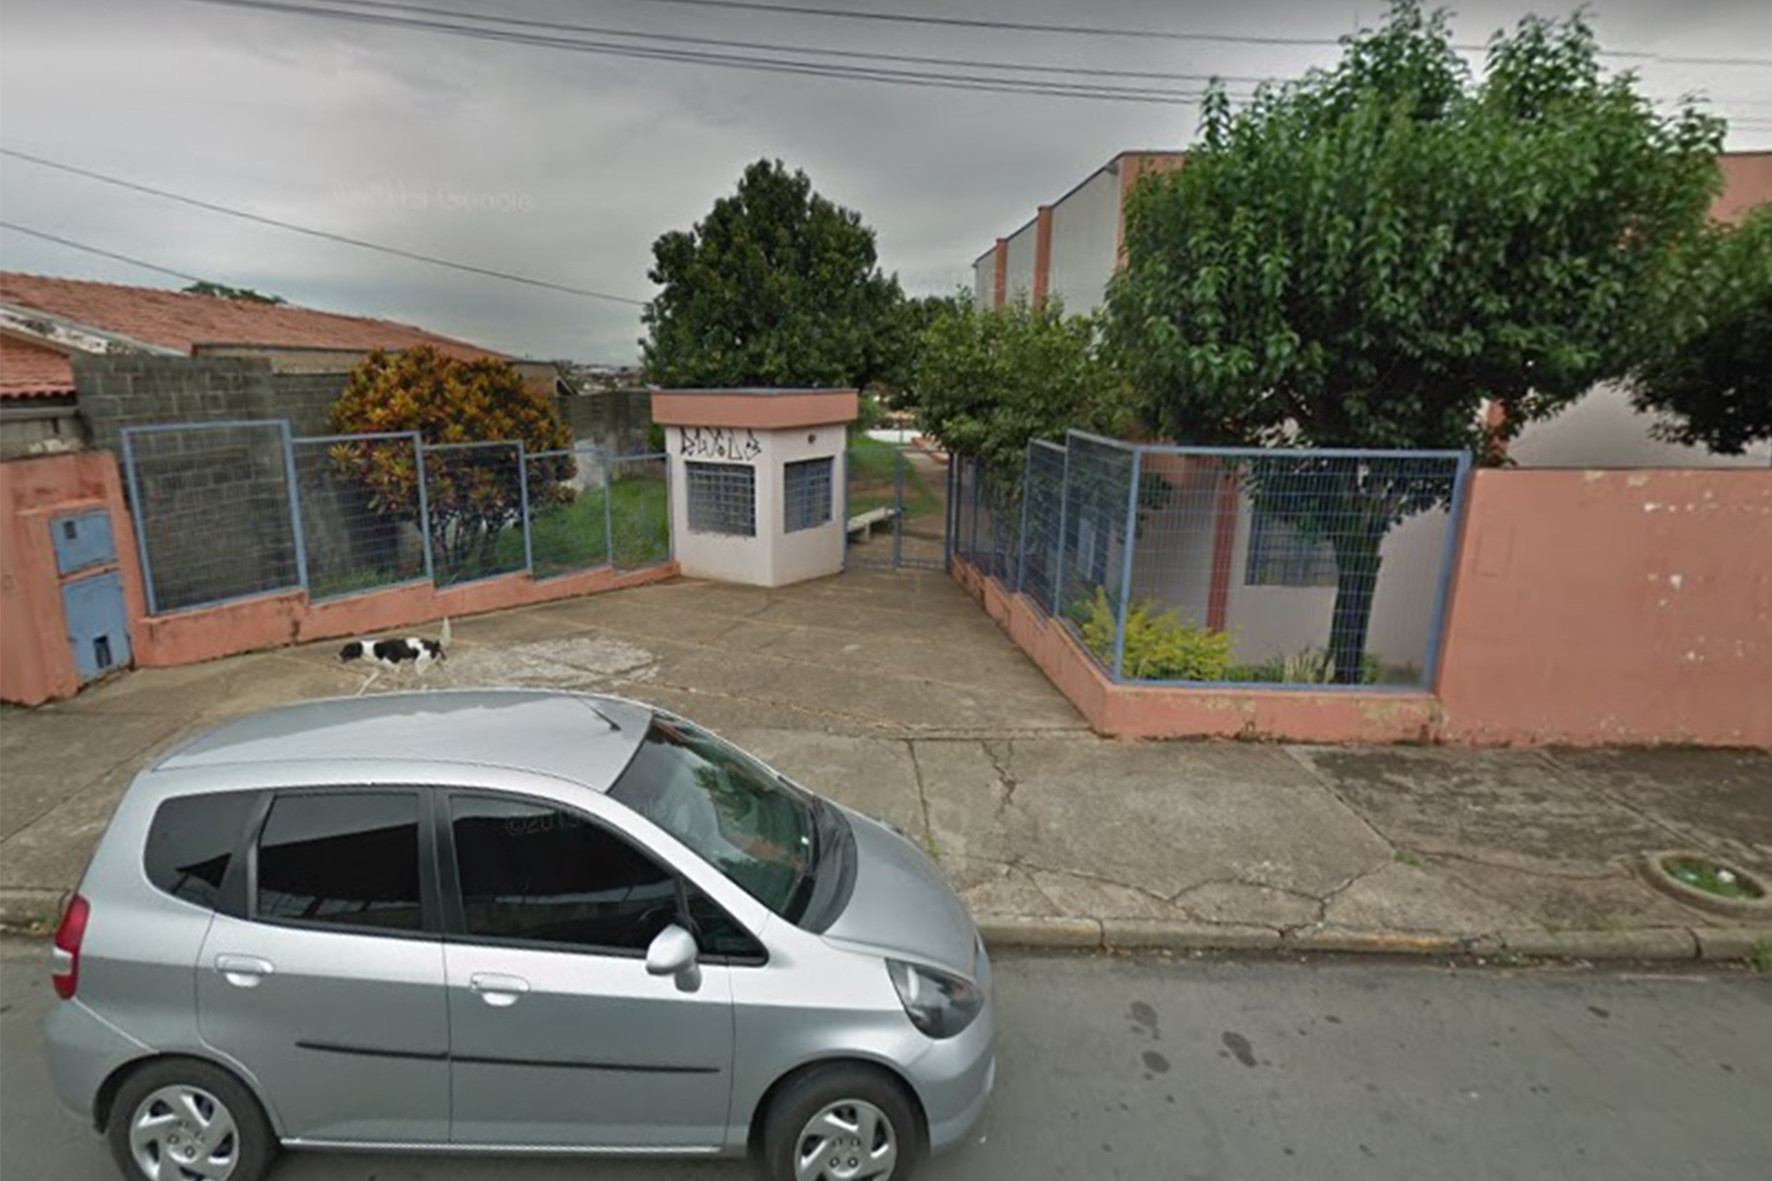 Fiação elétrica é furtada do centro comunitário da Vila Teixeira Marques, em Limeira